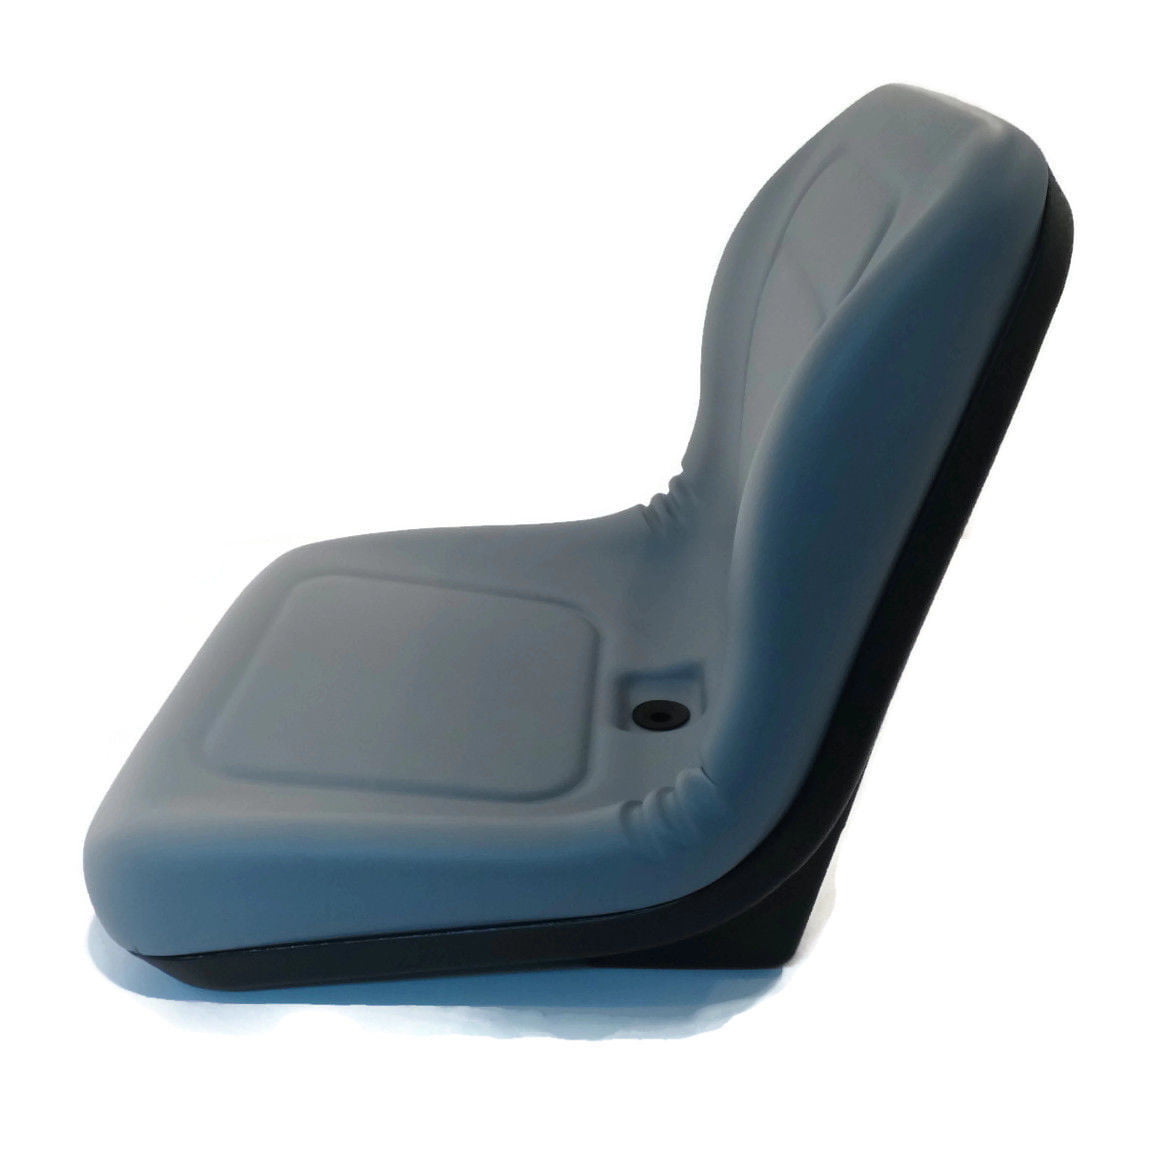 New Camo HIGH BACK SEAT for John Deere AM107759 AM108058 AM121752 AM126149 